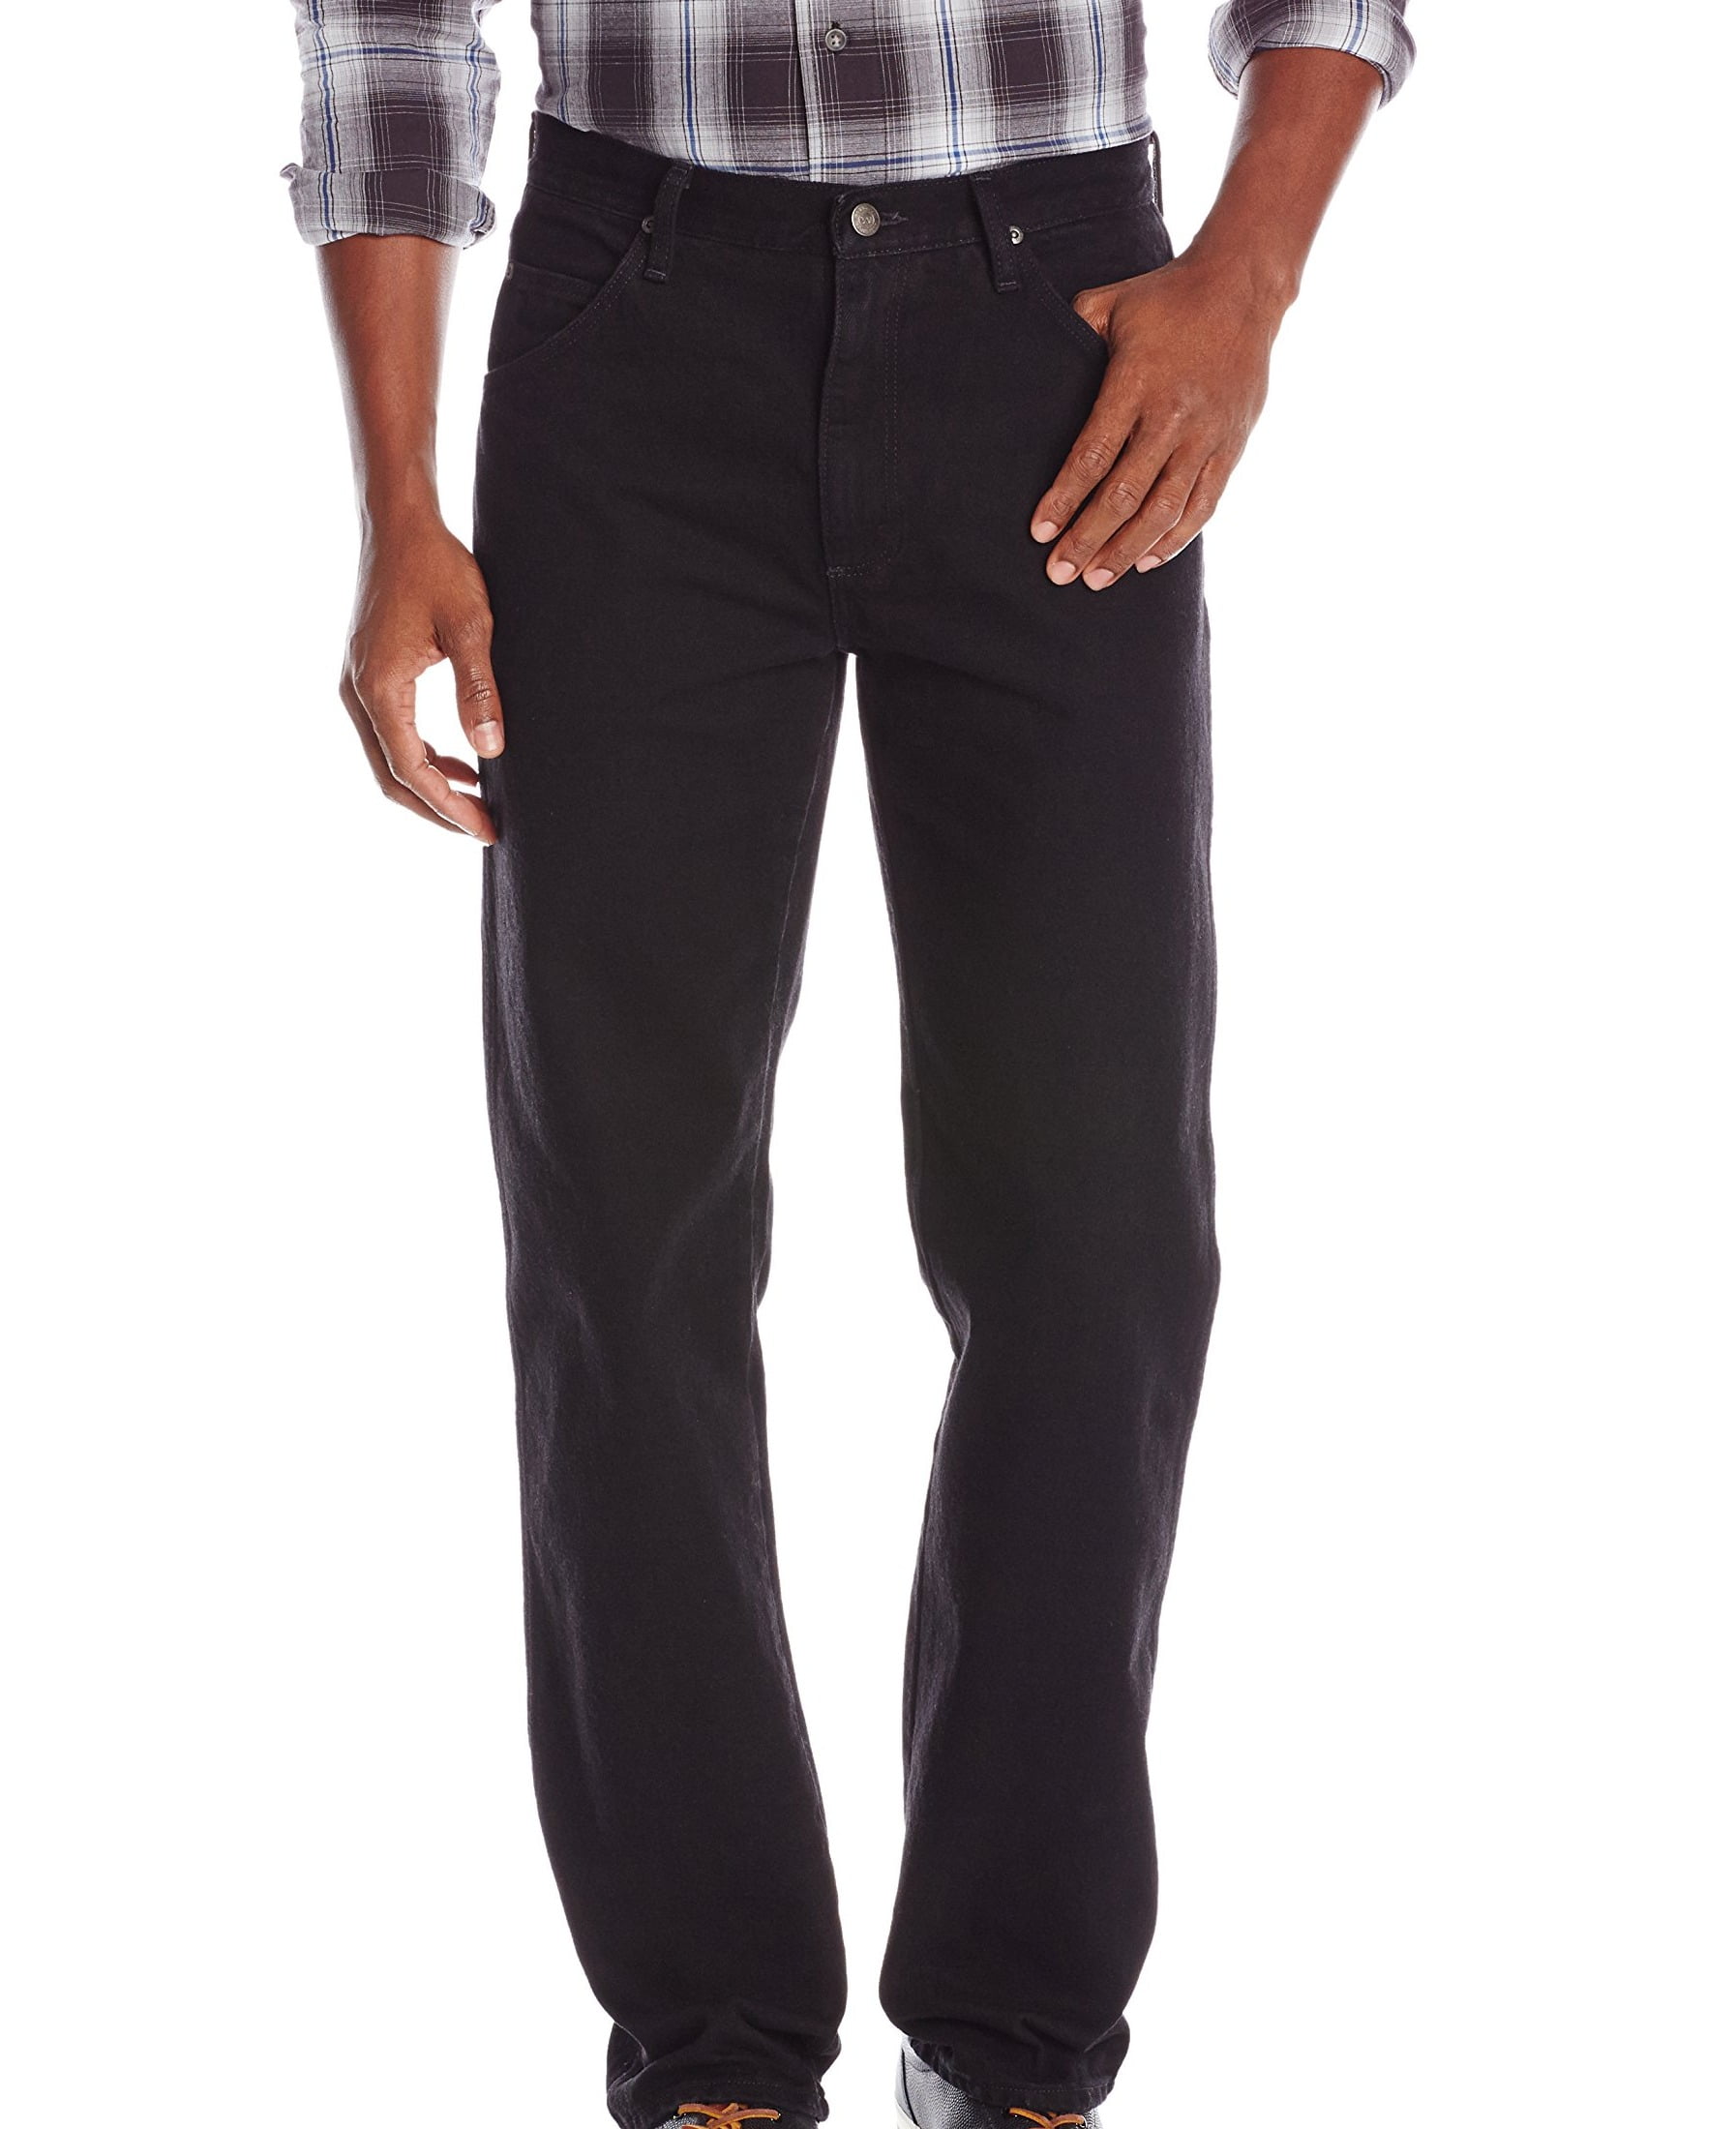 Mens 35X30 Regular-Fit Straight Leg Jeans 35 - Walmart.com